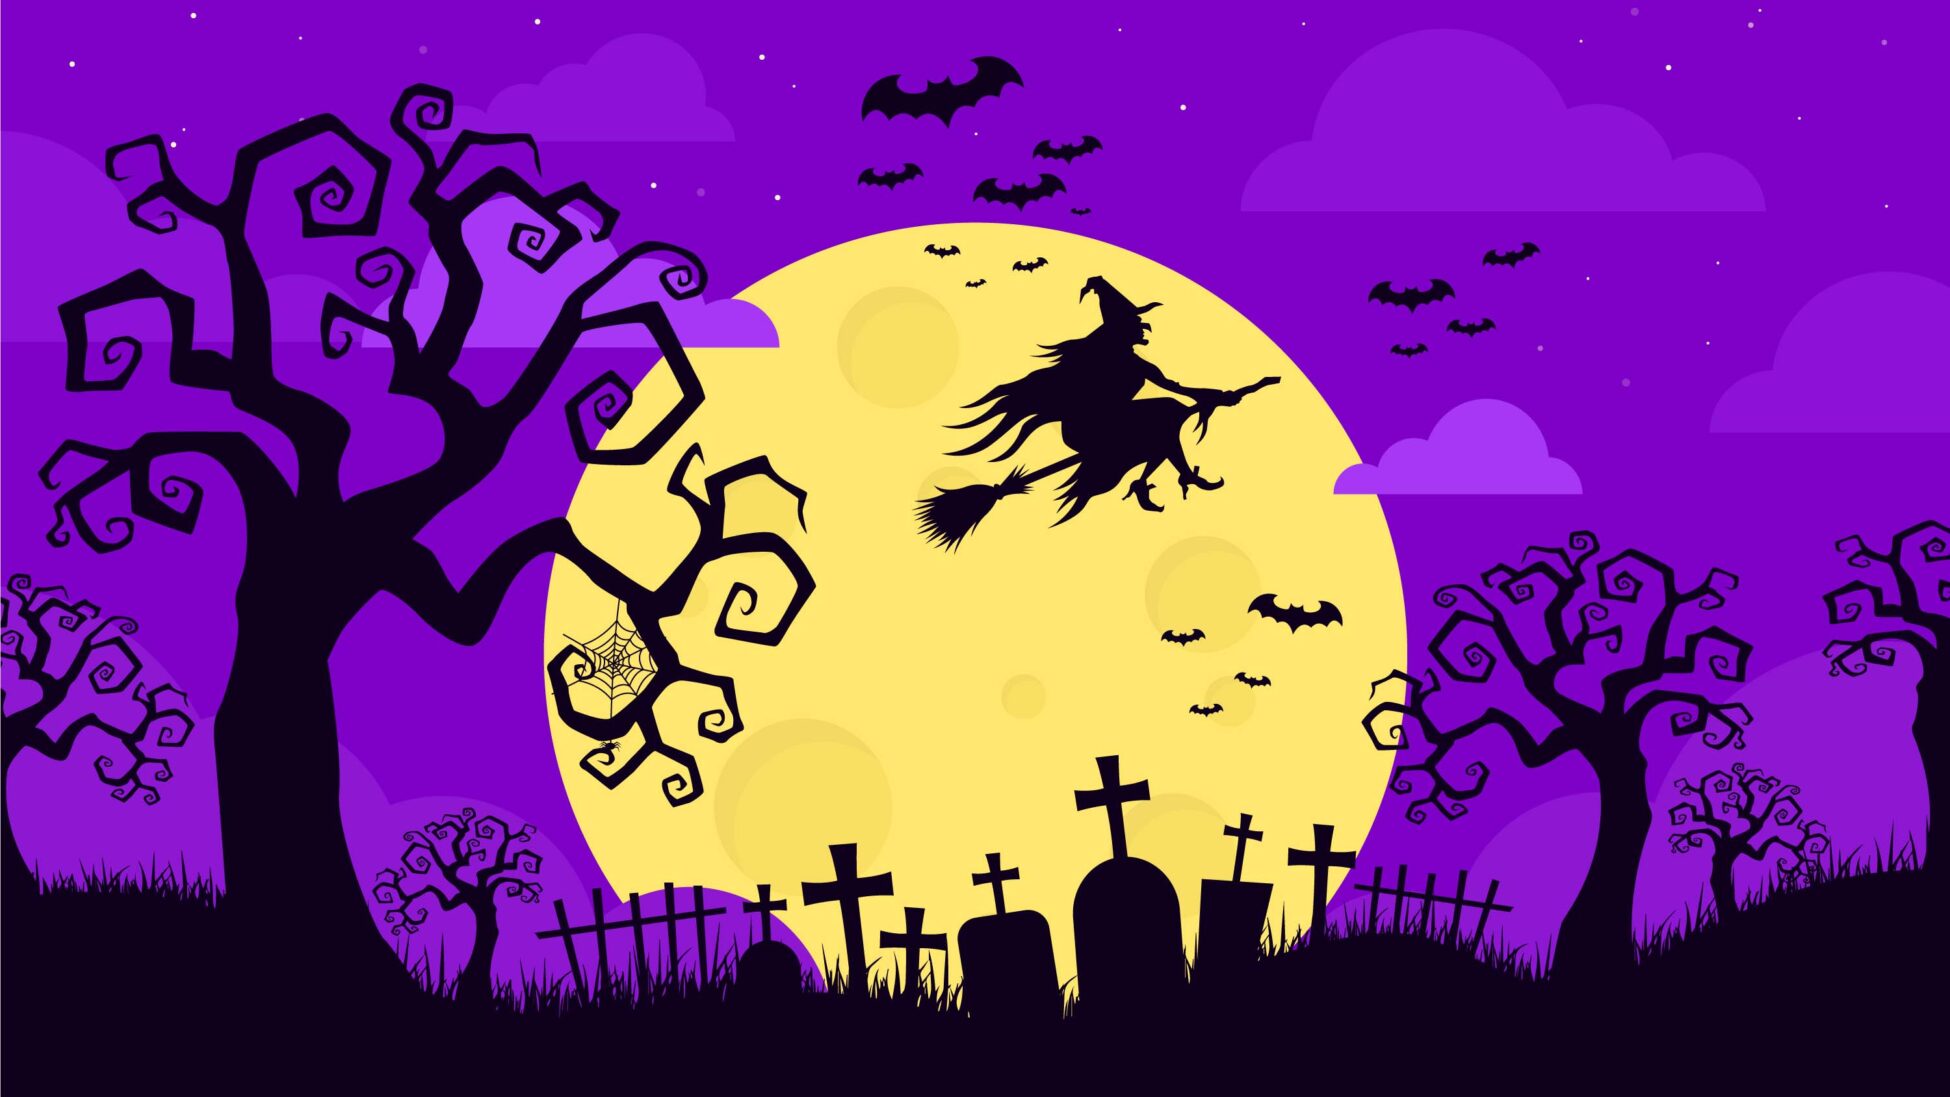 Ilustración de bruja montada en escoba voladora sobre cementerio en halloween